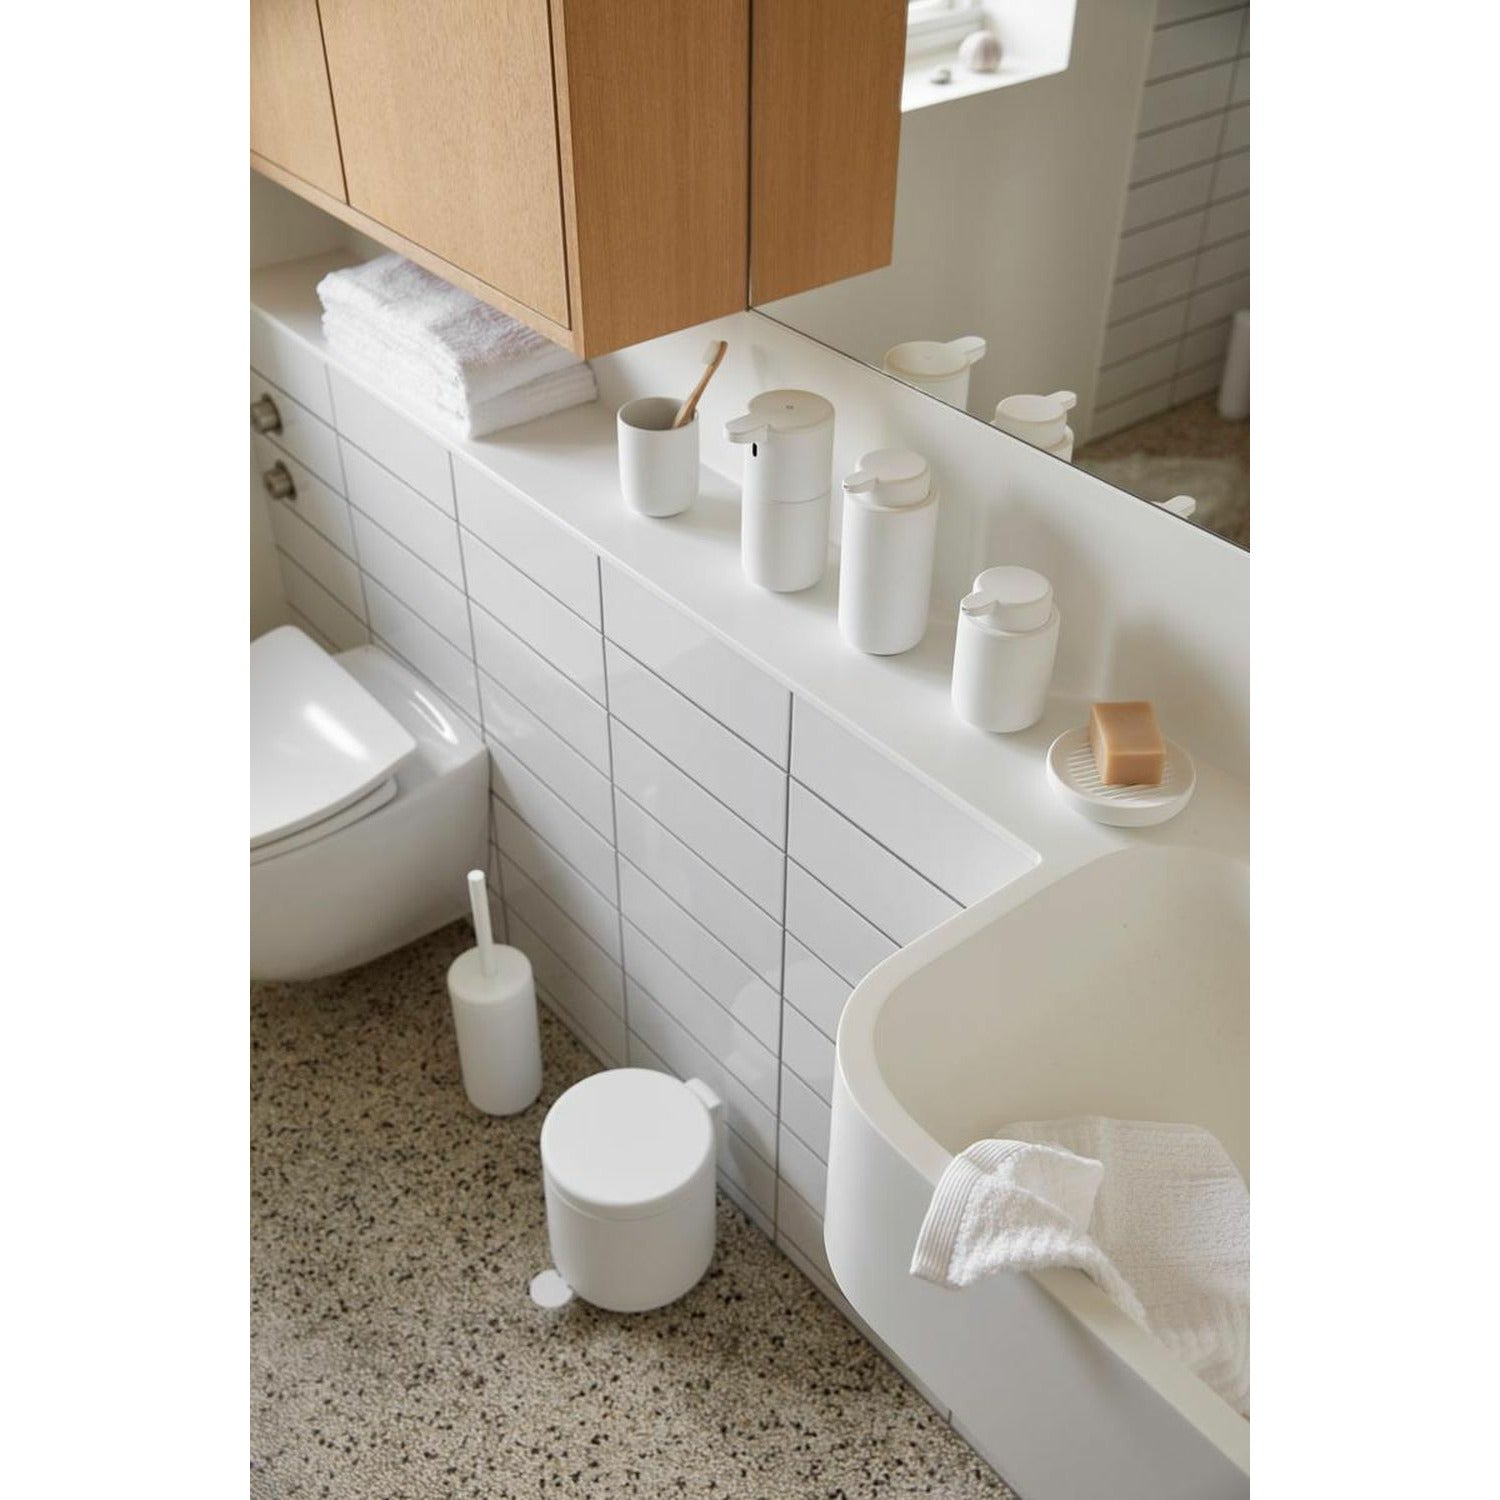 ZONA Danimarca pennello per toilette Ume, bianco